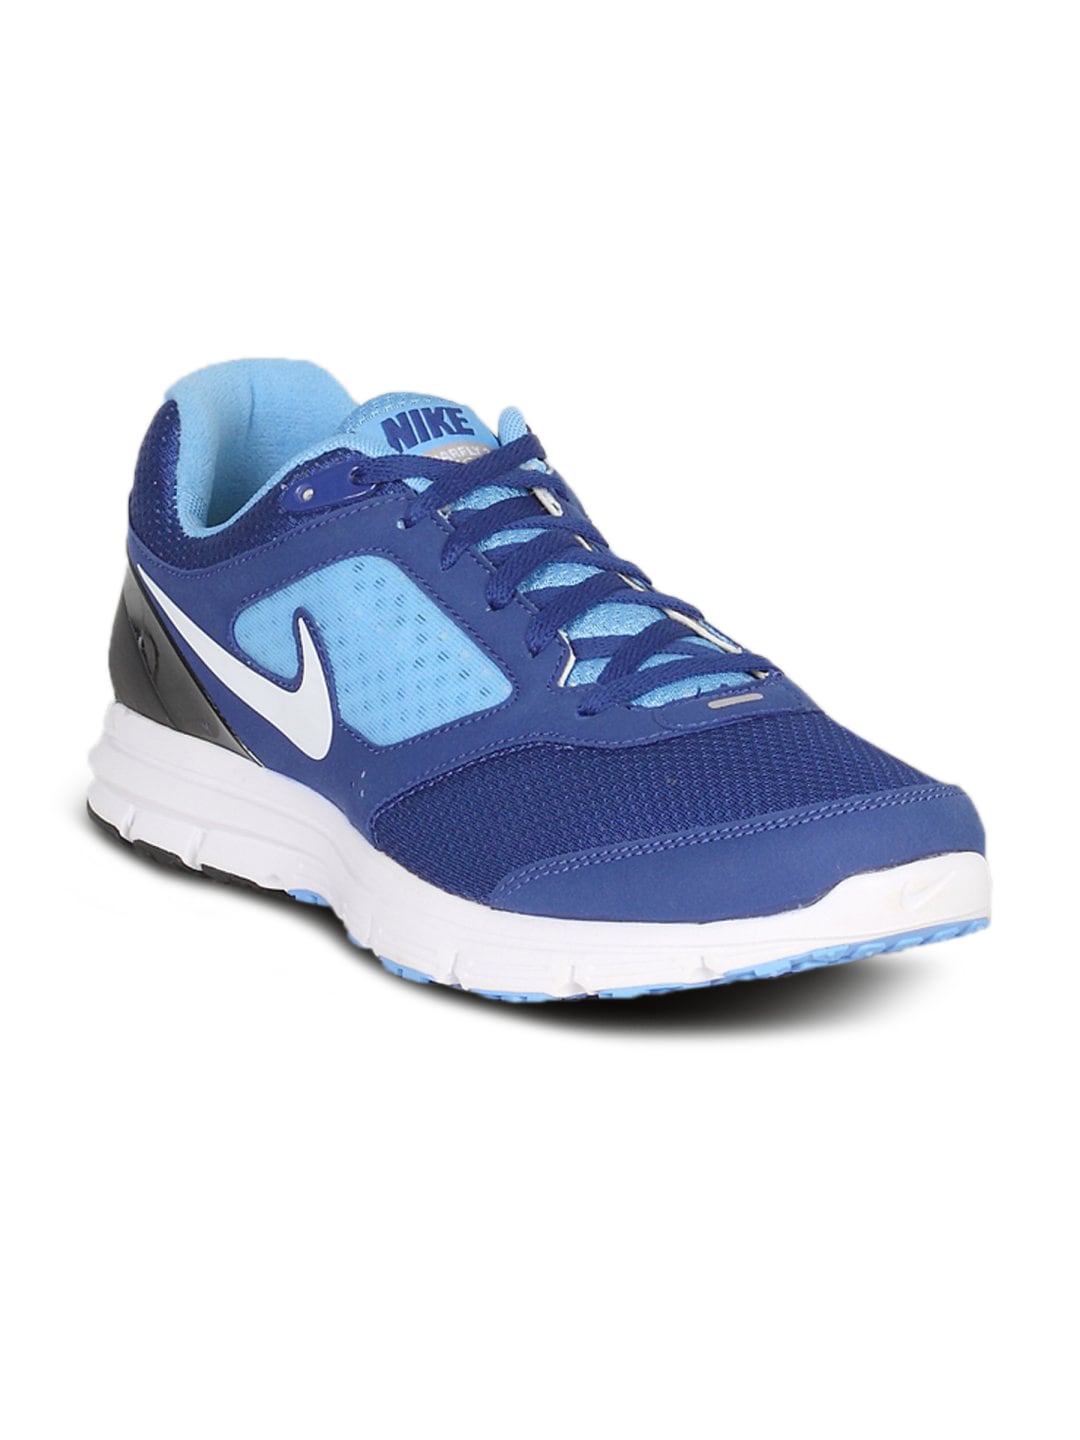 Nike Men's LunarFly Blue Shoe